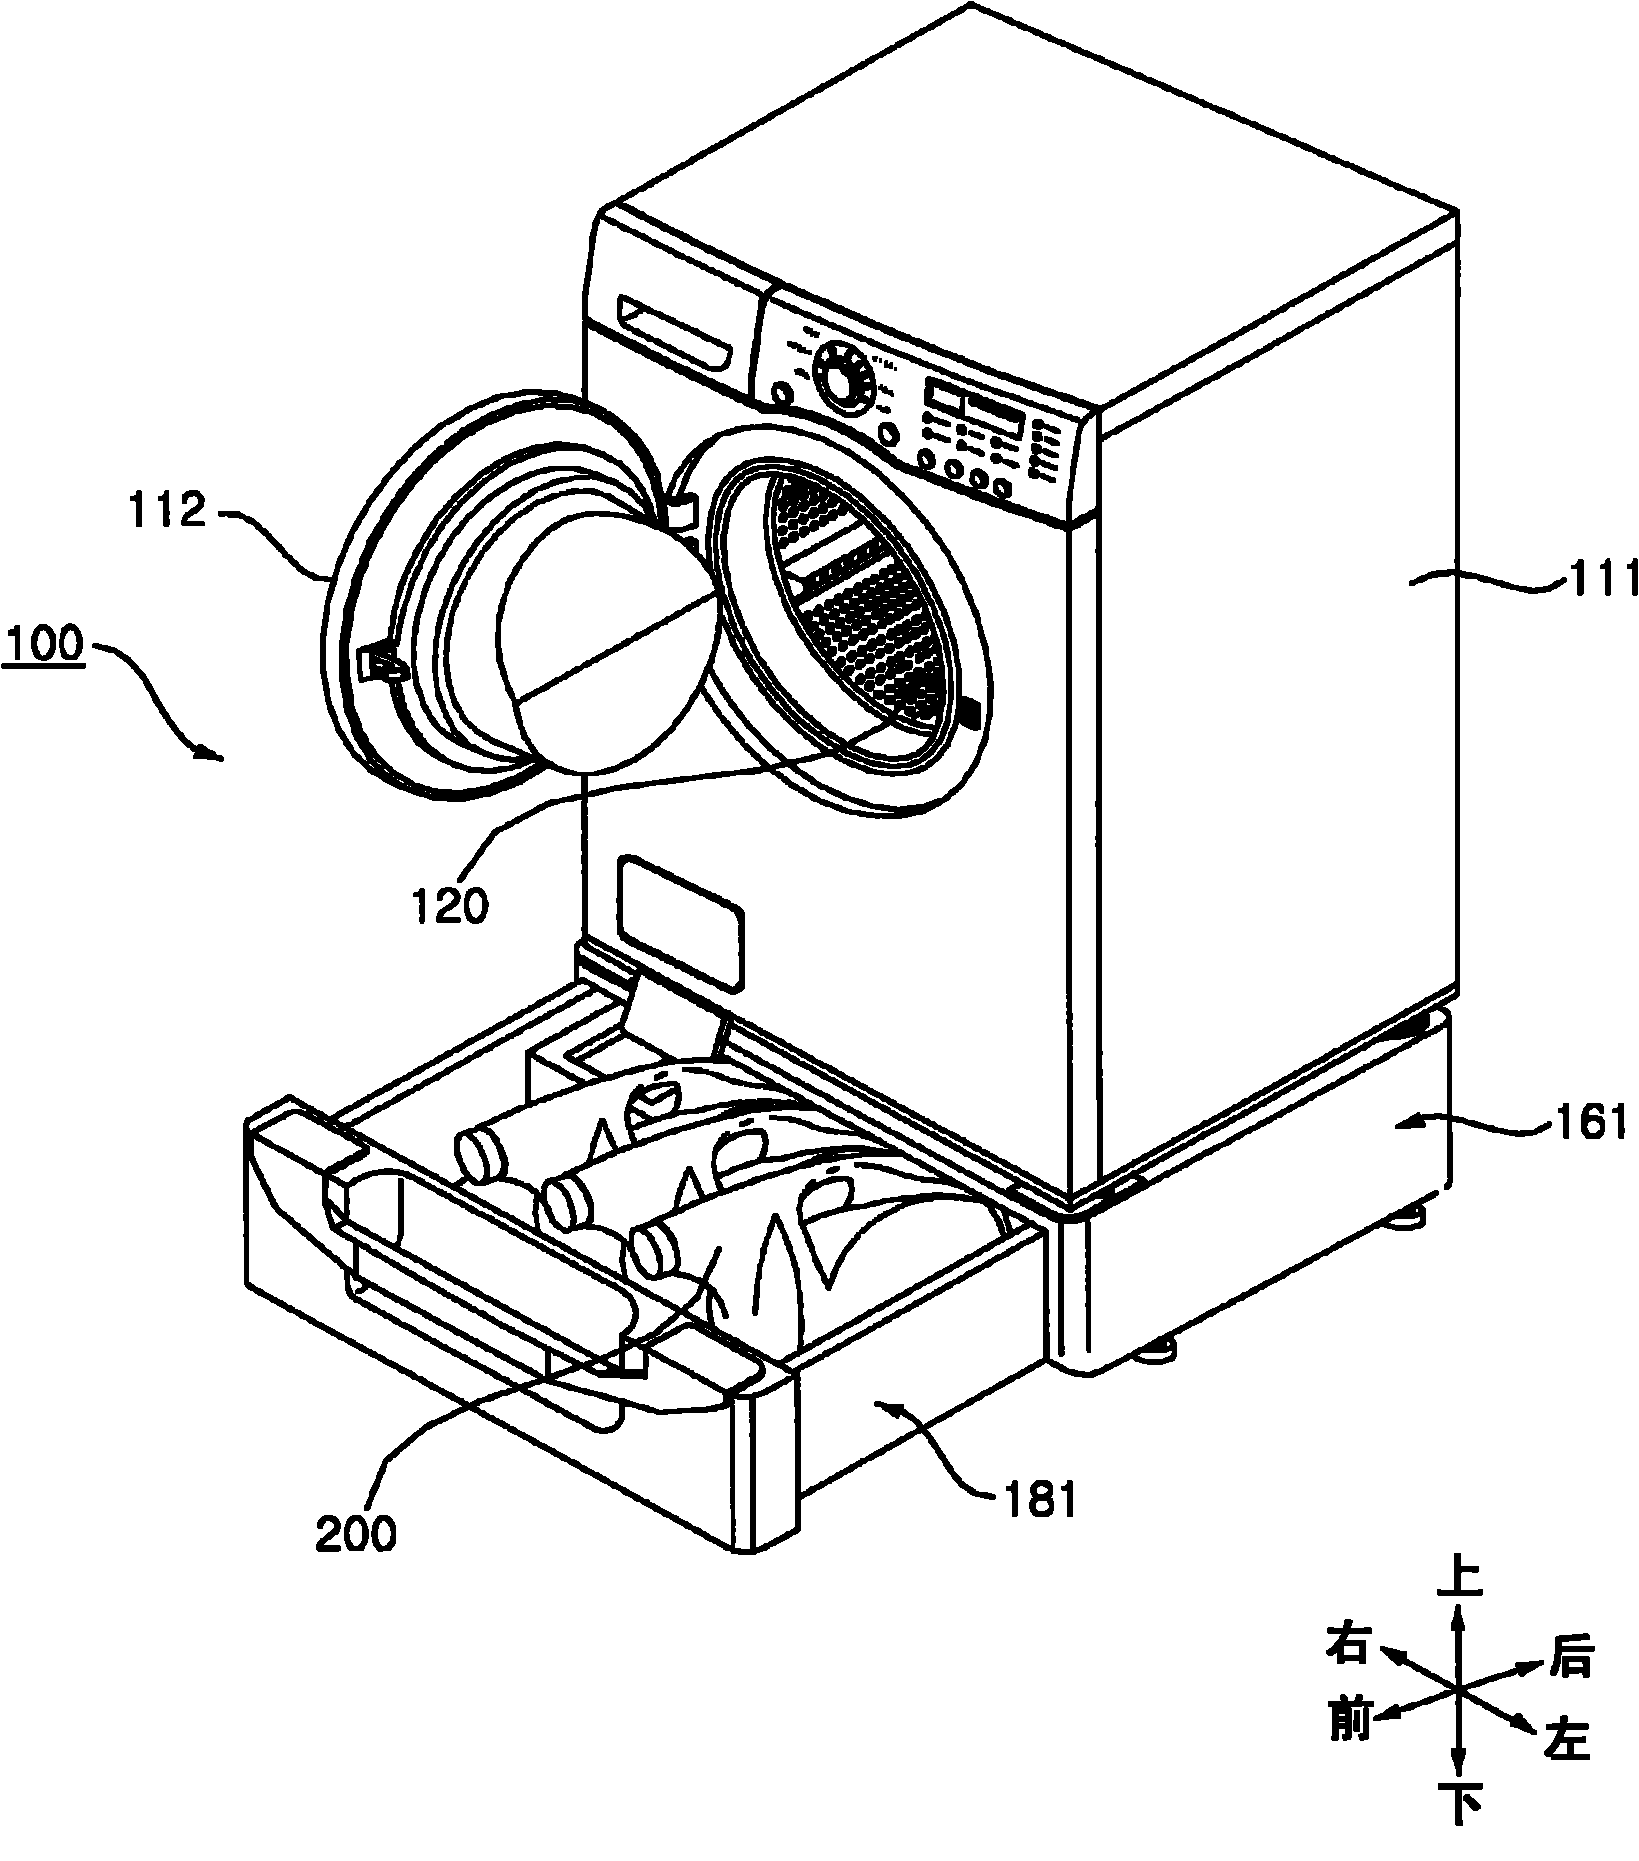 Dispenser and washing machine